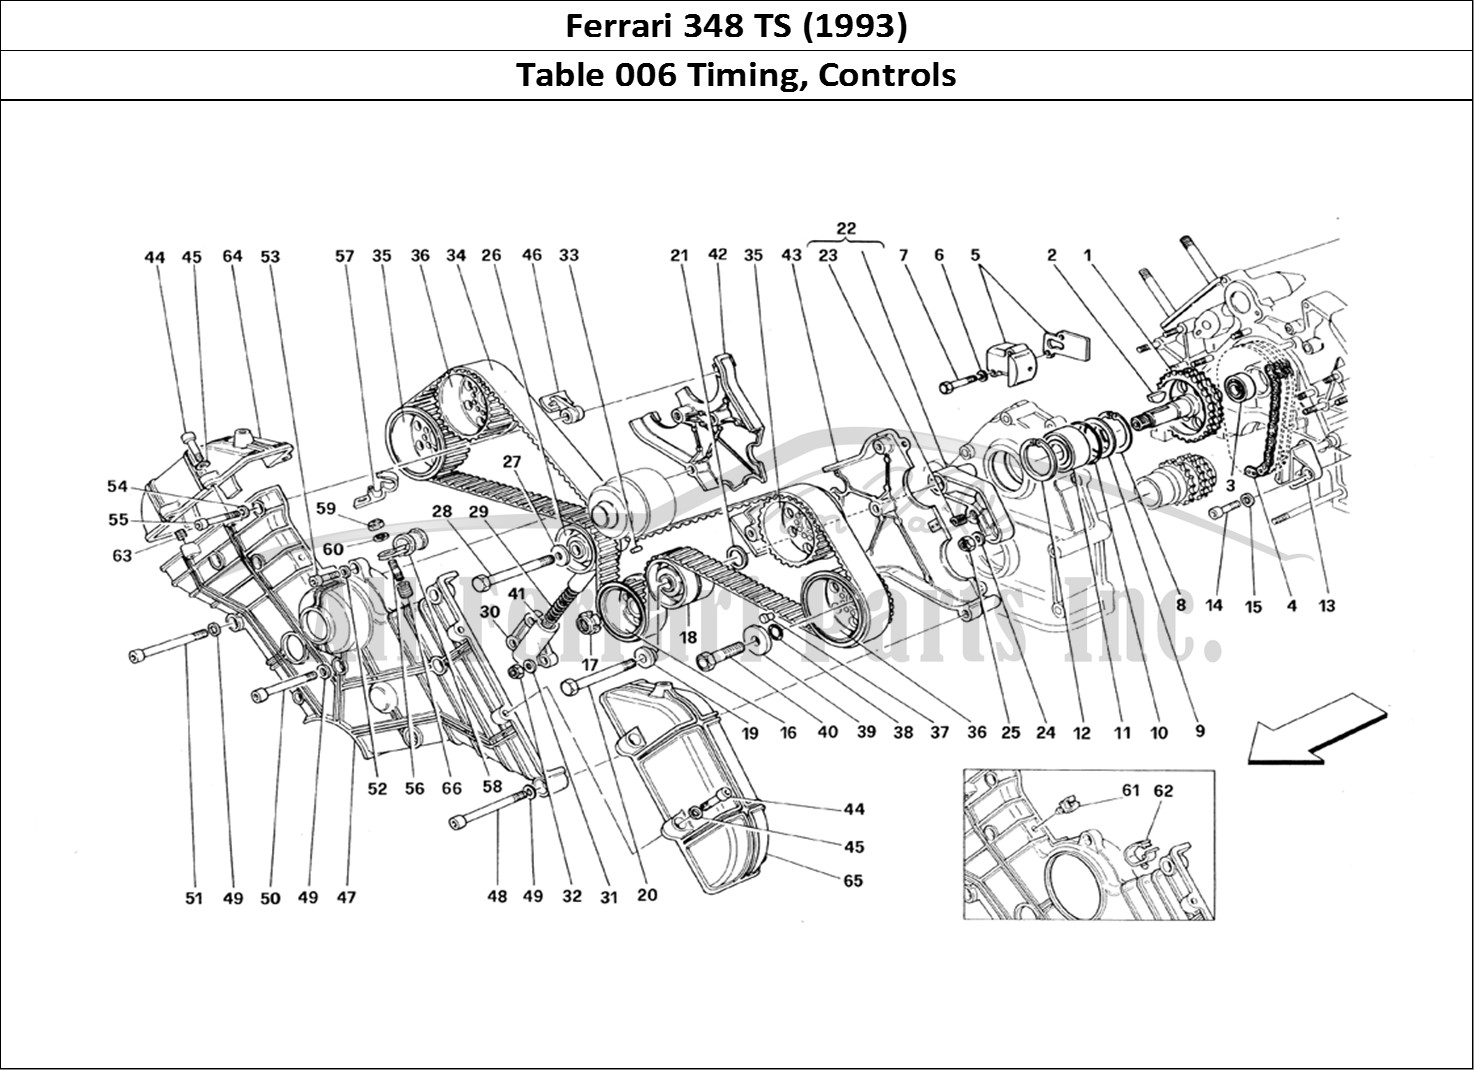 Ferrari Parts Ferrari 348 TB (1993) Page 006 Timing - Controls